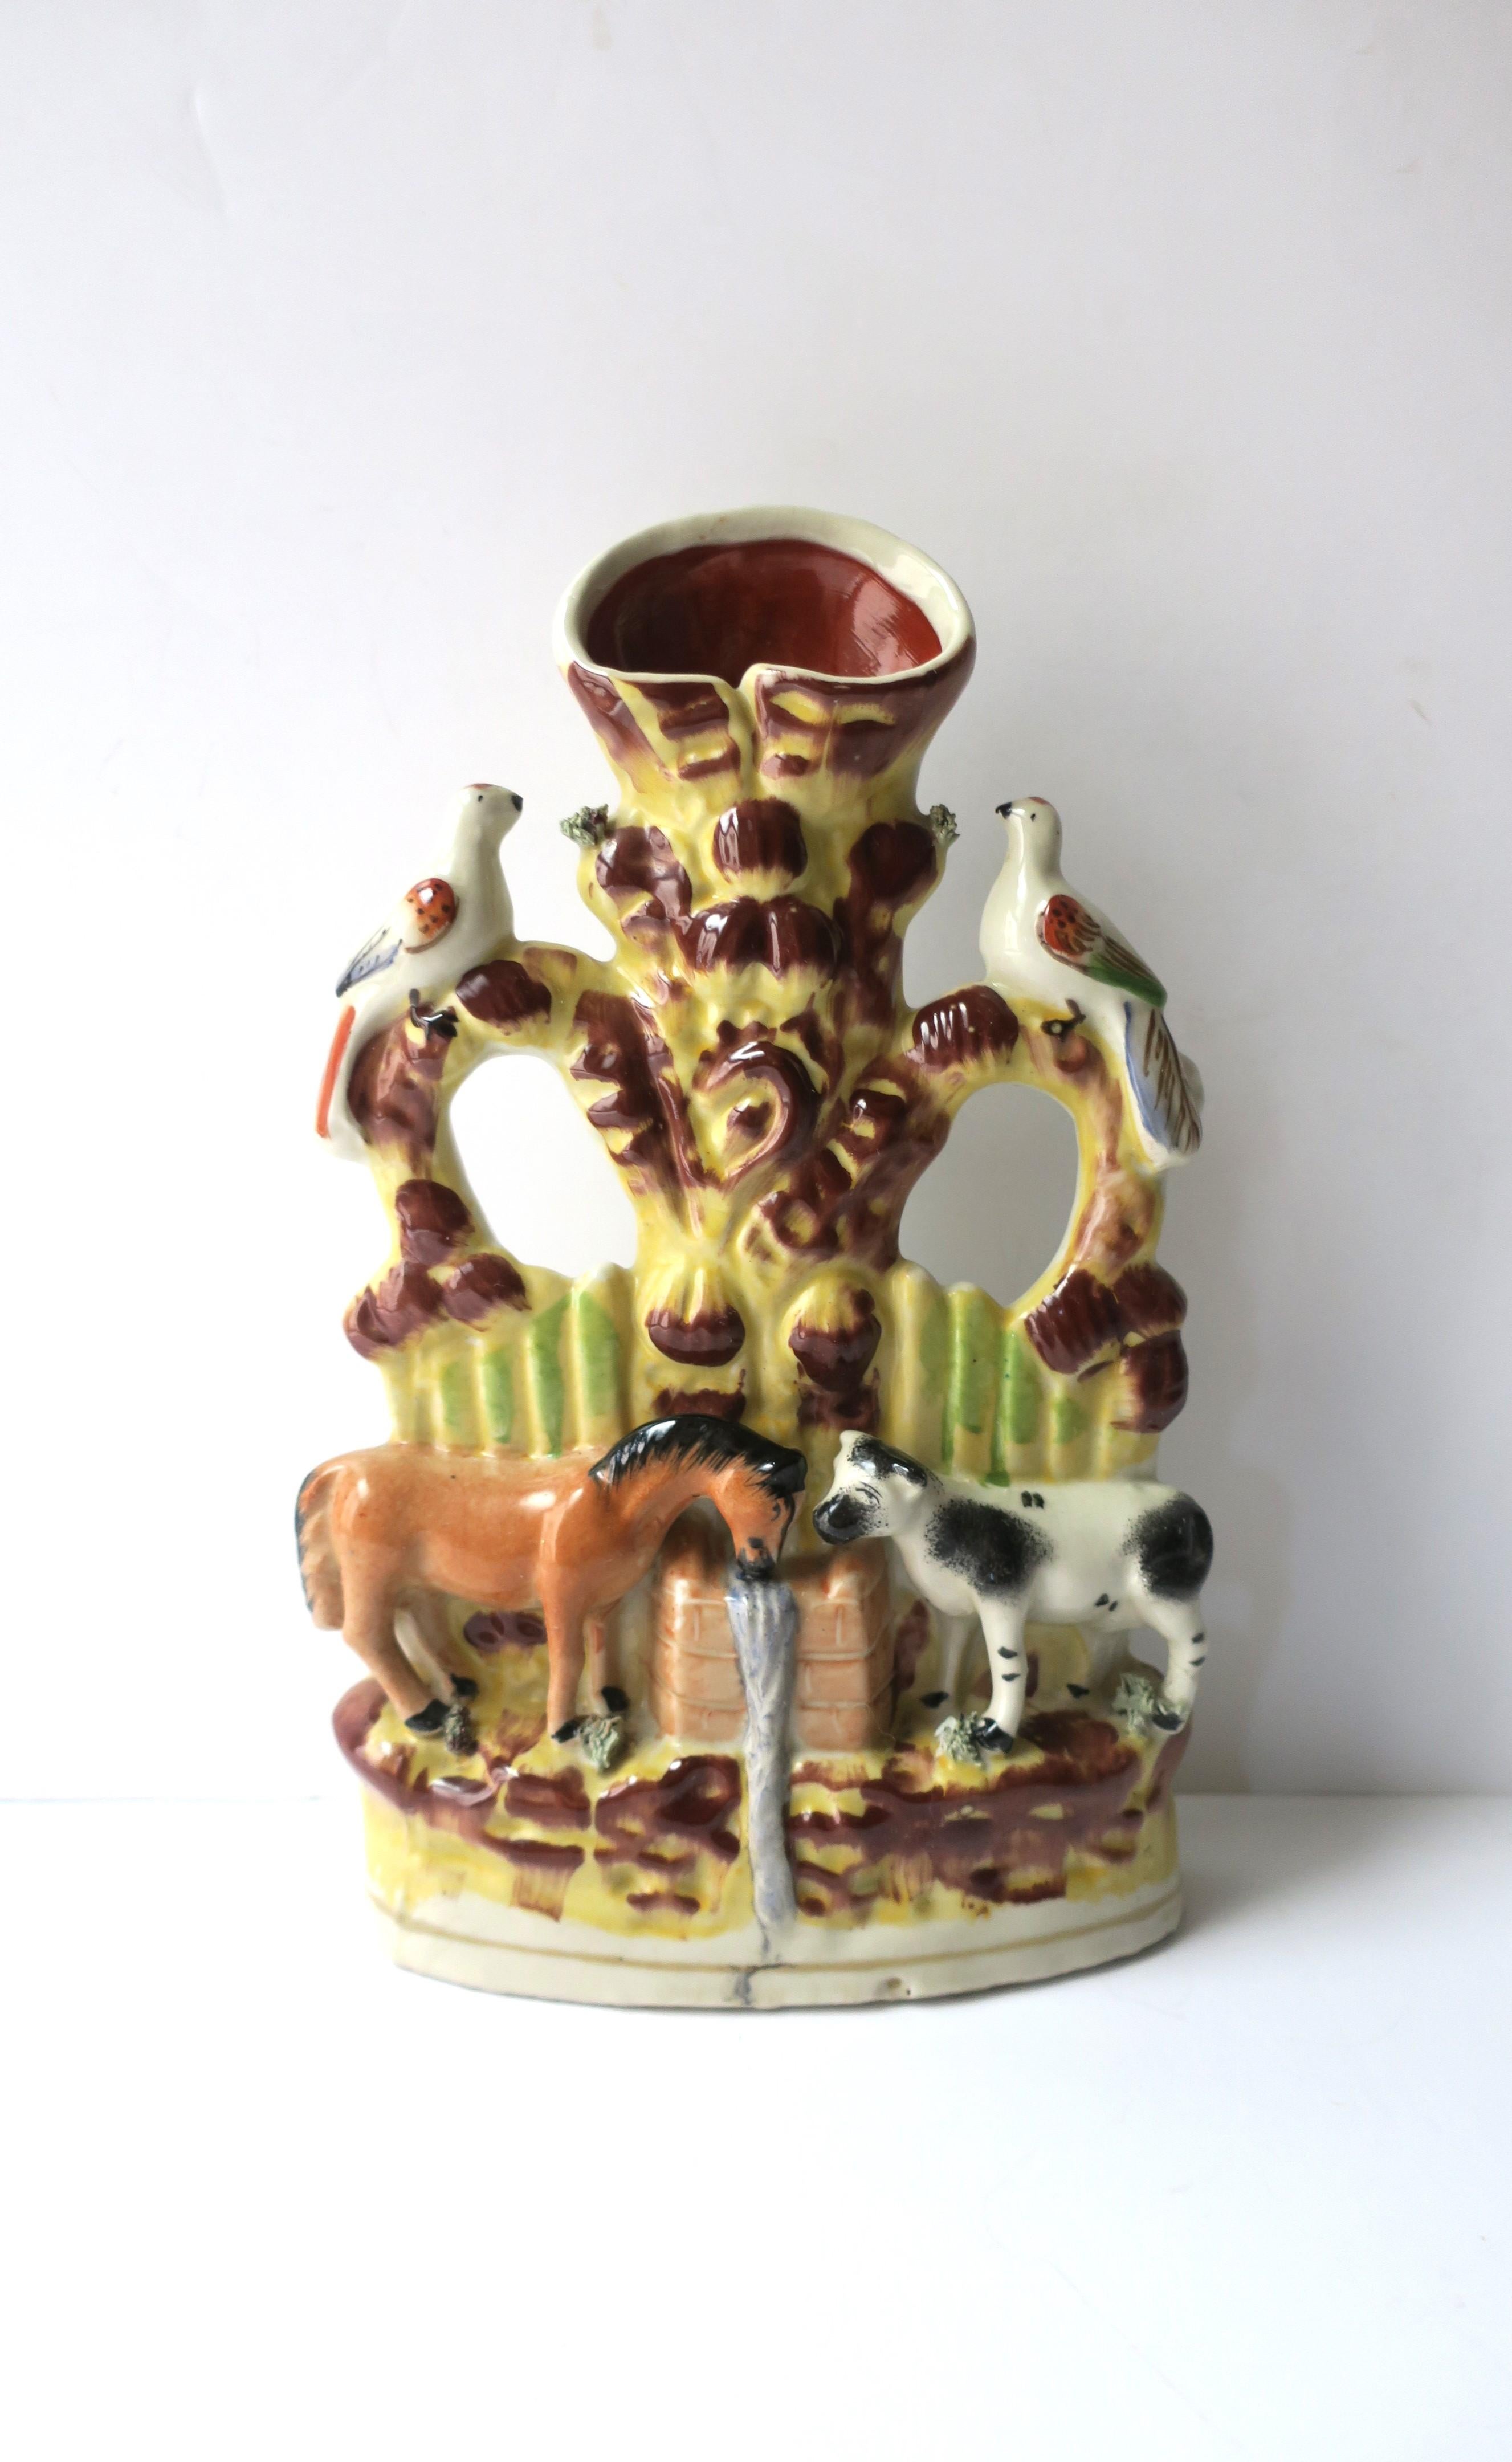 Vase à déversement en poterie avec scène de ferme animale, design Folk Art, attribué au Staffordshire, vers le début du 20e siècle, Angleterre. Une belle scène d'oiseaux colombes sur un perchoir en haut, et un cheval et une vache en bas buvant à